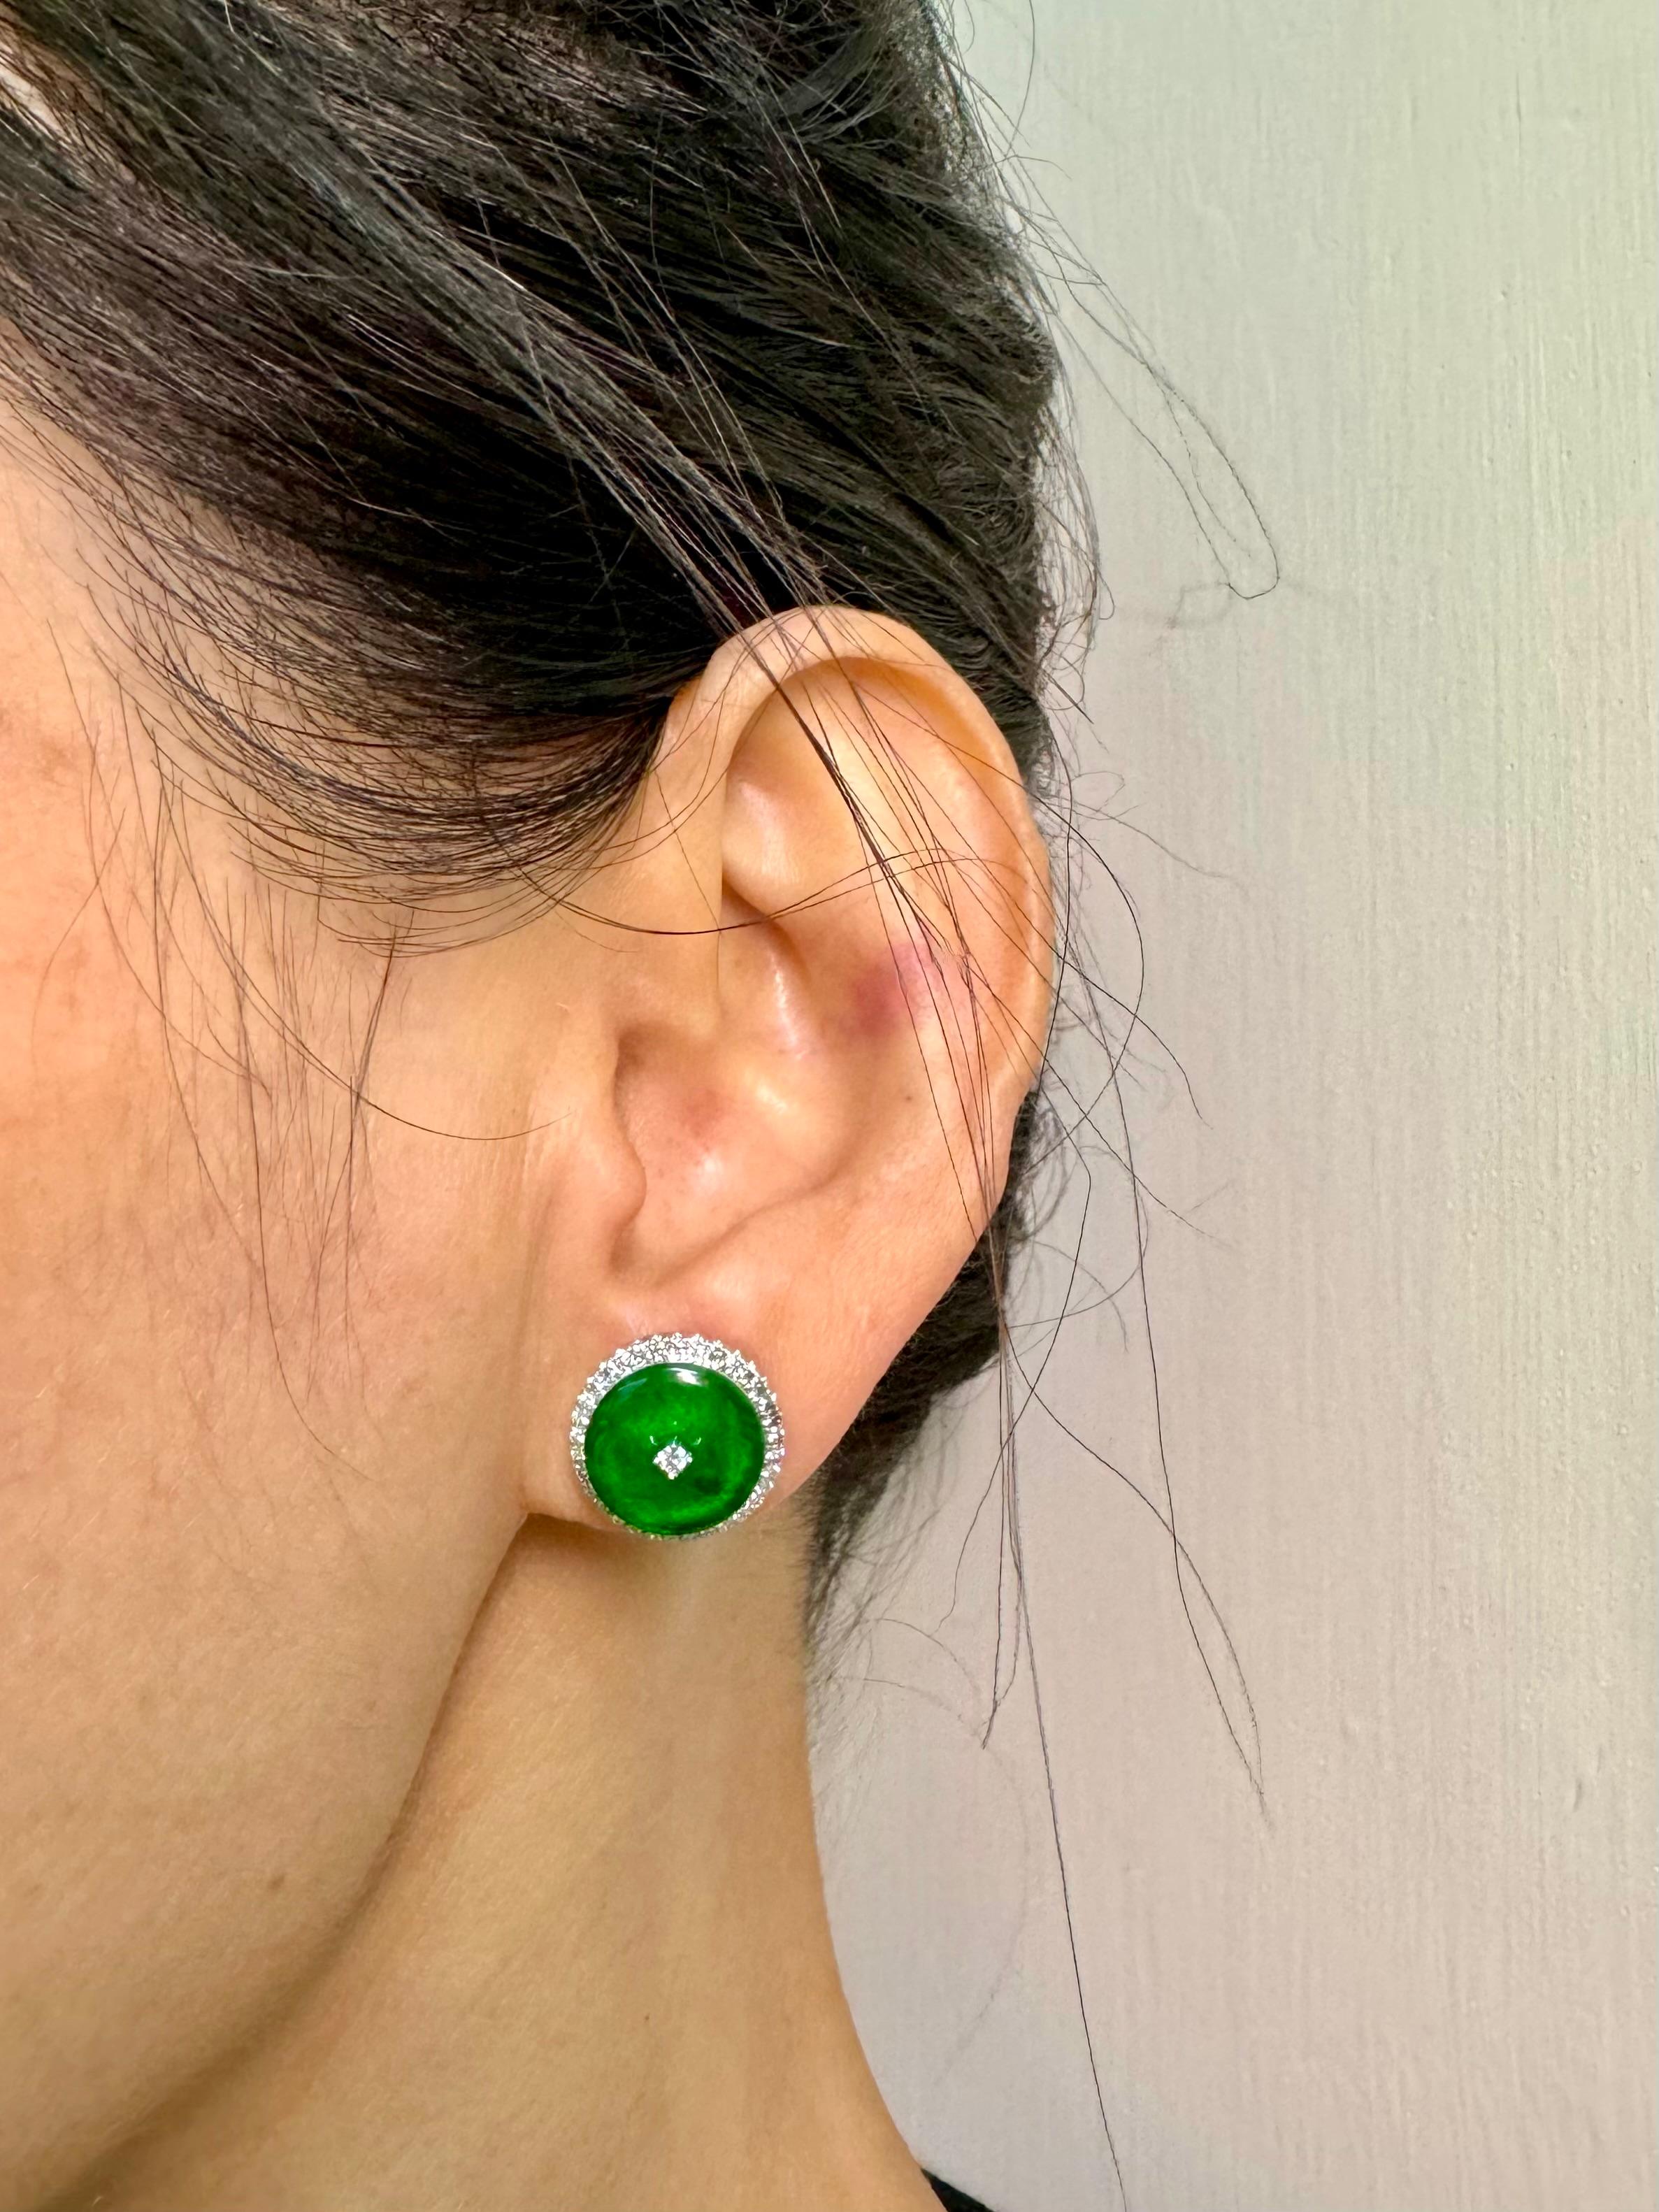 Bitte sehen Sie sich das HD-Video an! Hier ist ein schönes Paar von hellen Apfelgrün Jade Ohrringe. Jeder Ohrring ist etwa 14 mm groß. Die Ohrringe sind in 18 Karat Weißgold und Diamanten gefasst. Der Halo besteht aus 67 weißen Brillanten von